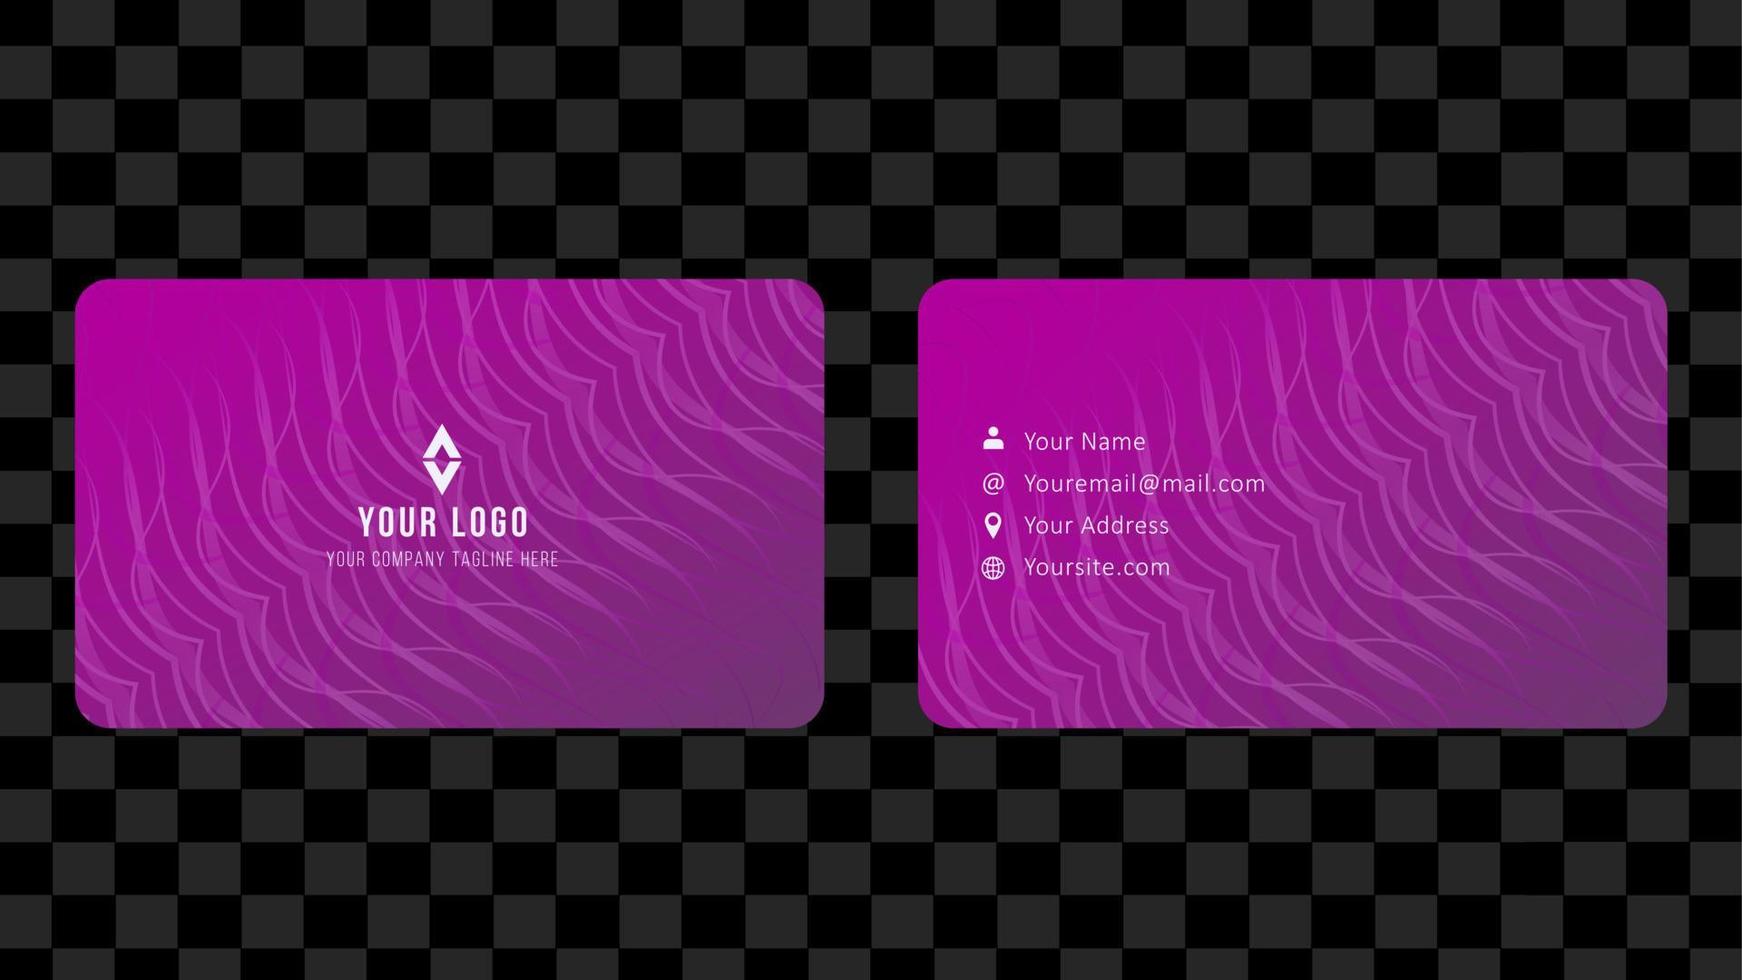 kreatives visitenkartenschablonendesign, kontaktkarte für unternehmen, zweiseitig mit fließendem verlauf auf lila hintergrund, vektorgrafikillustration vektor